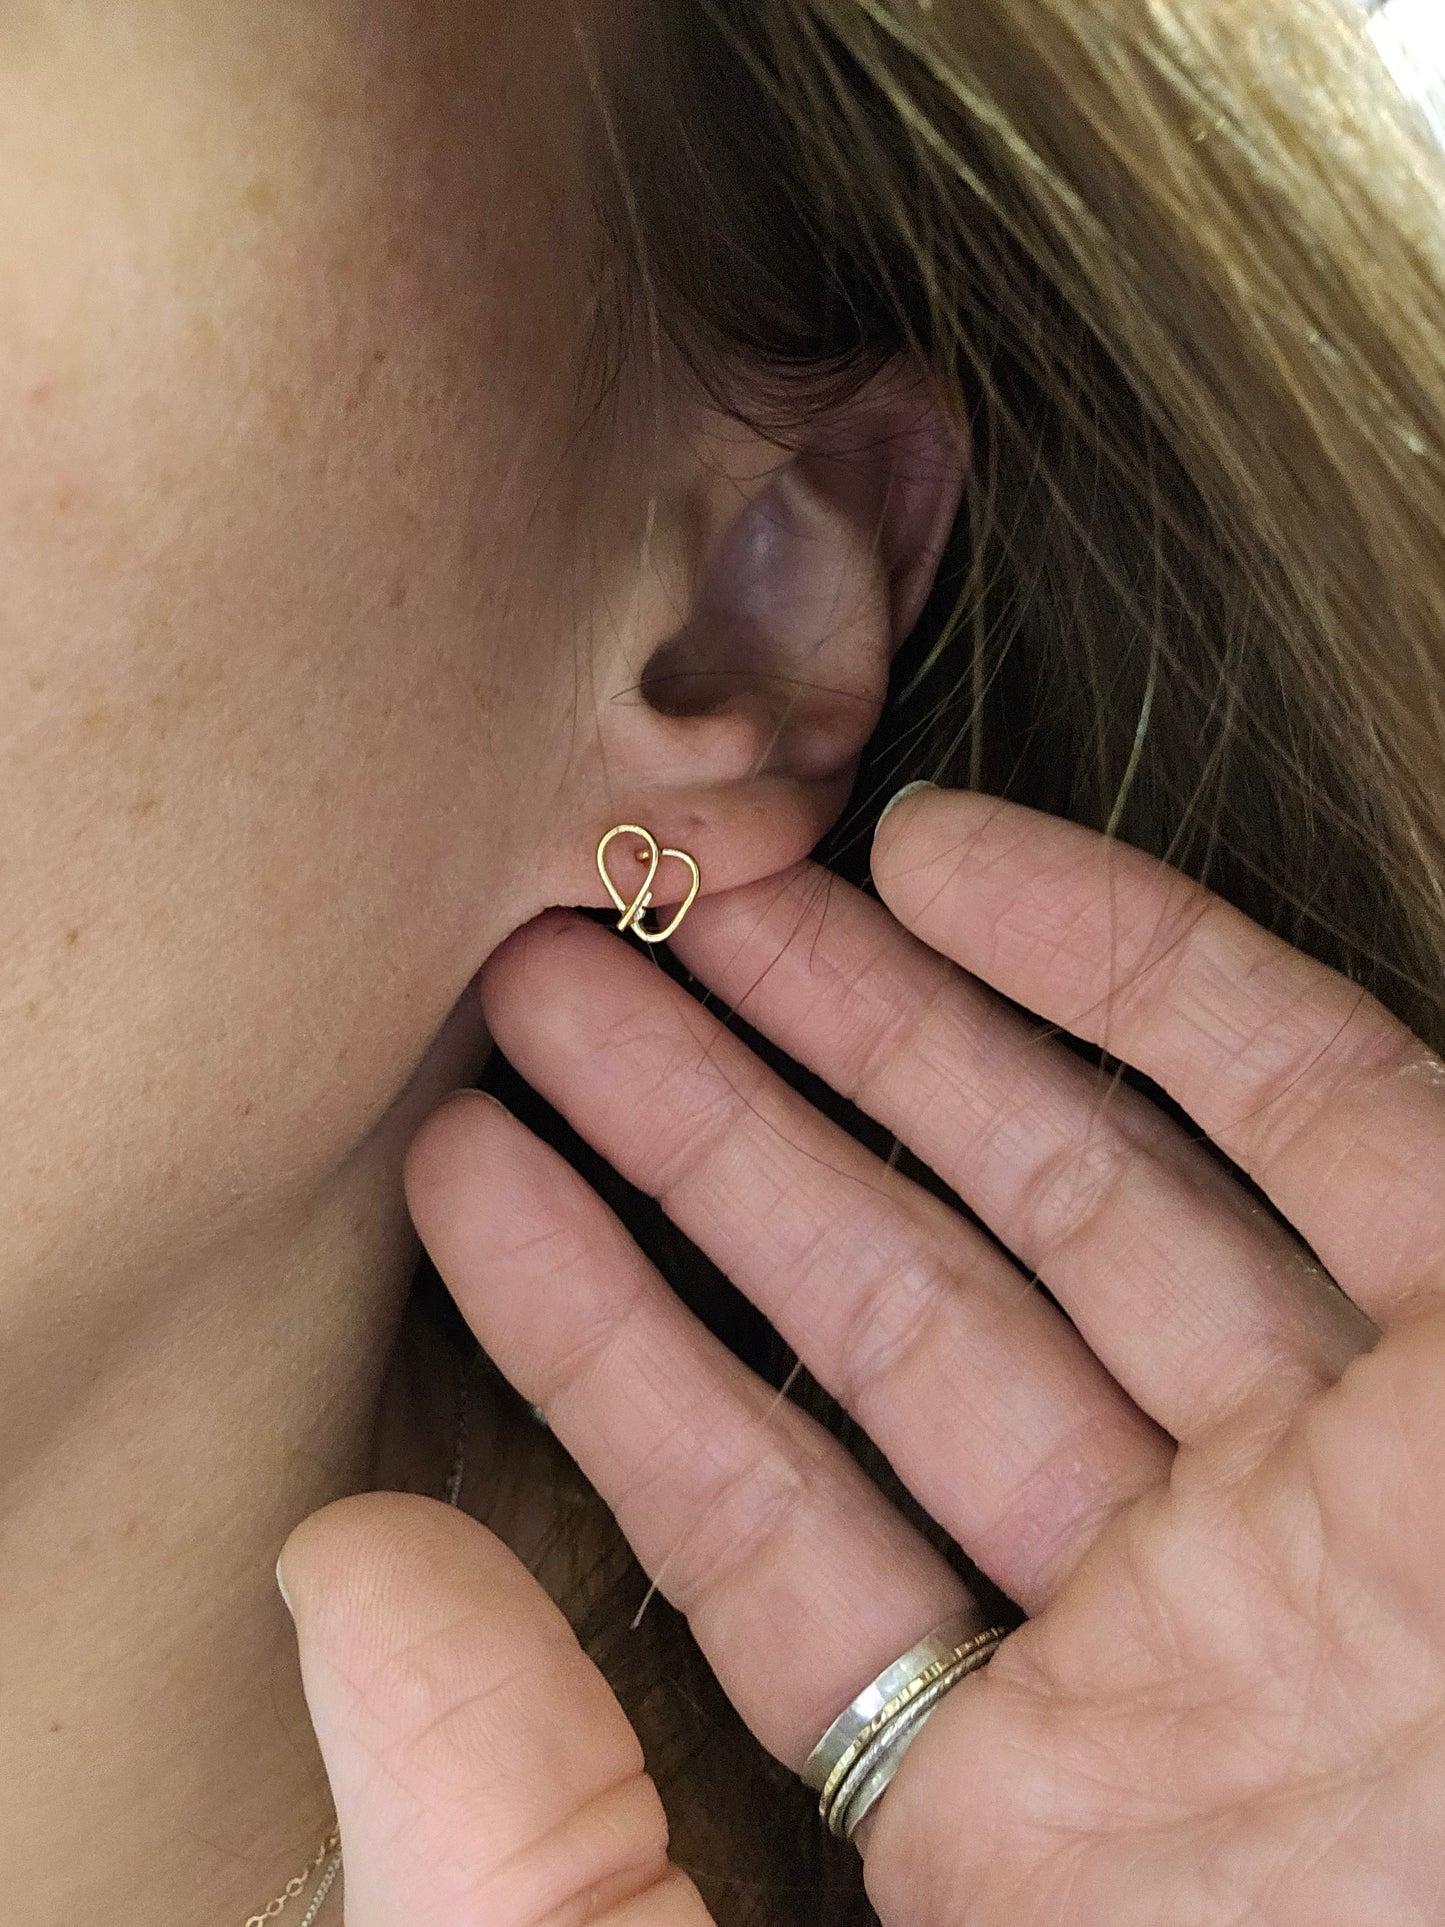 Self love key cute earrings in 14K Gold on a woman's ear 